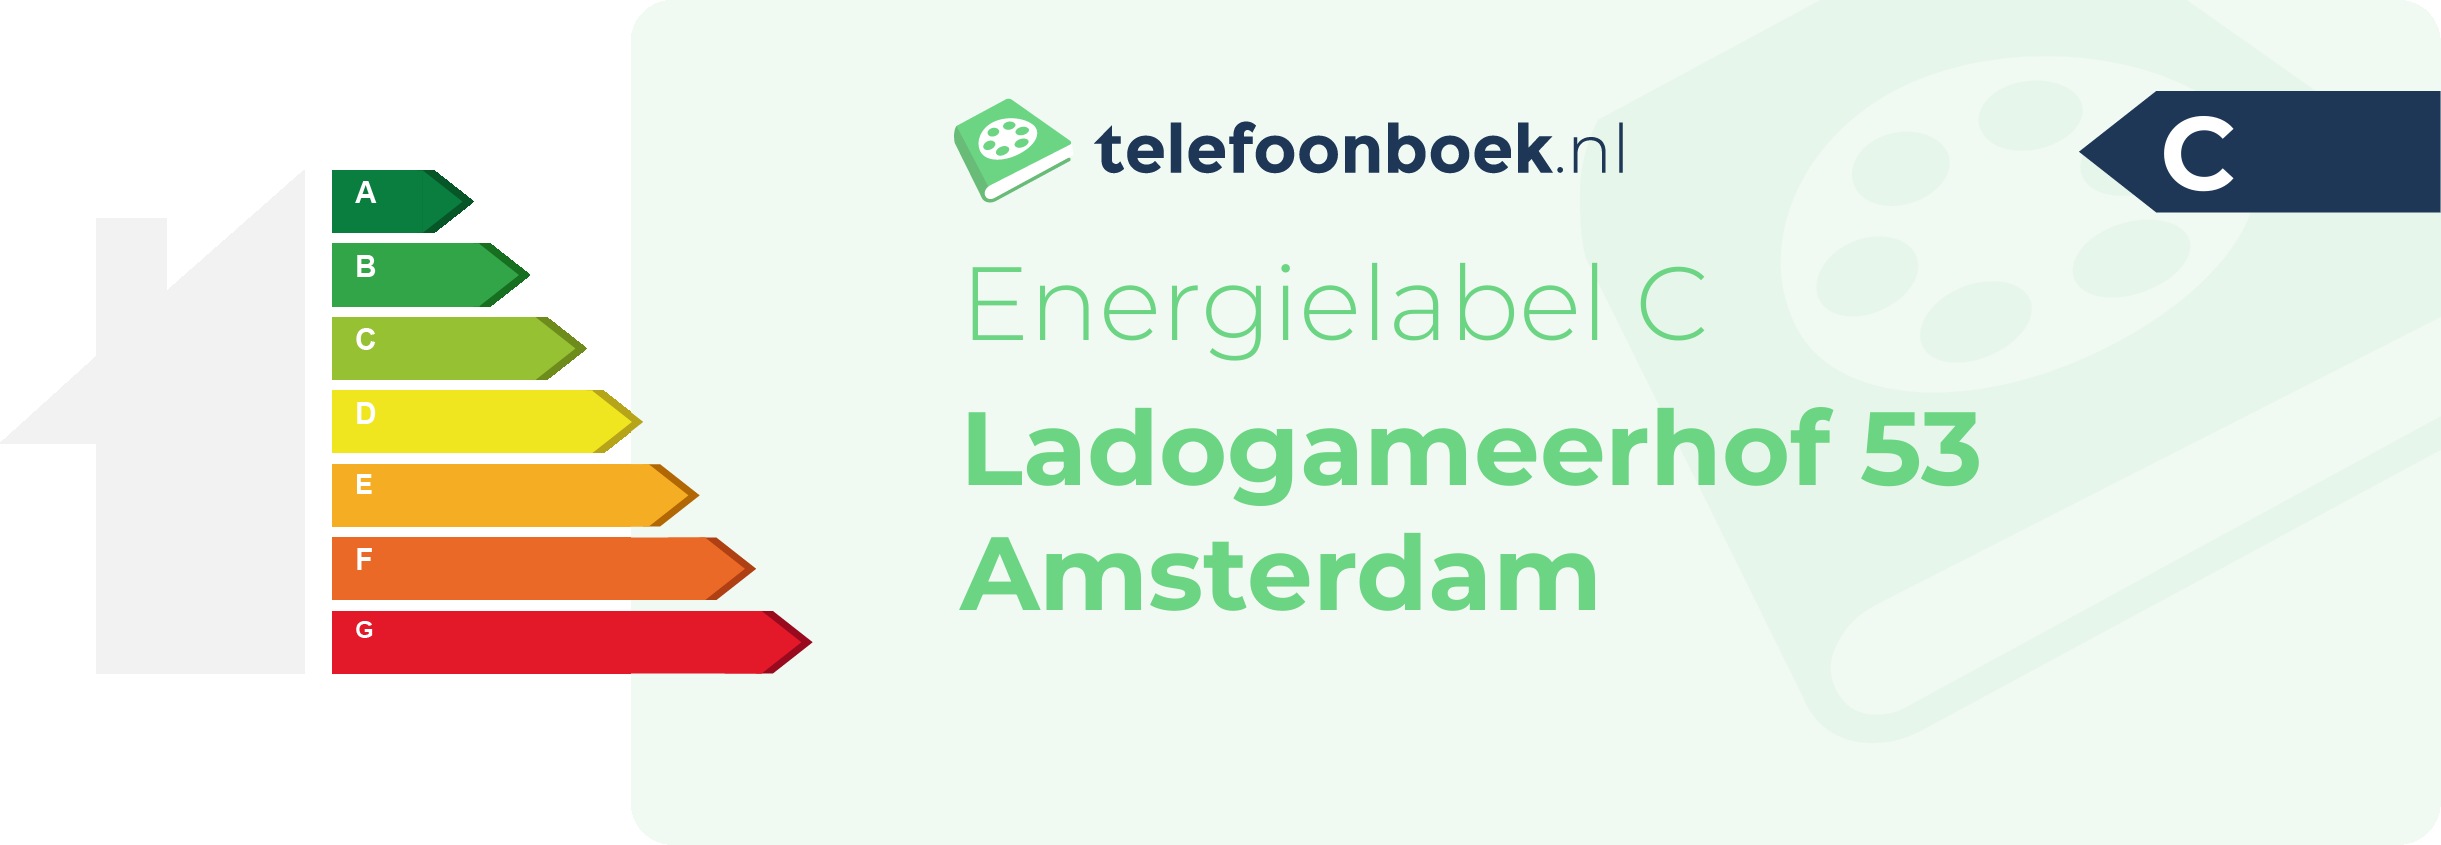 Energielabel Ladogameerhof 53 Amsterdam